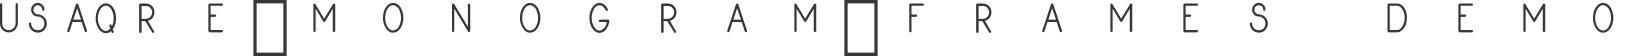 square-monogram-frames Demo